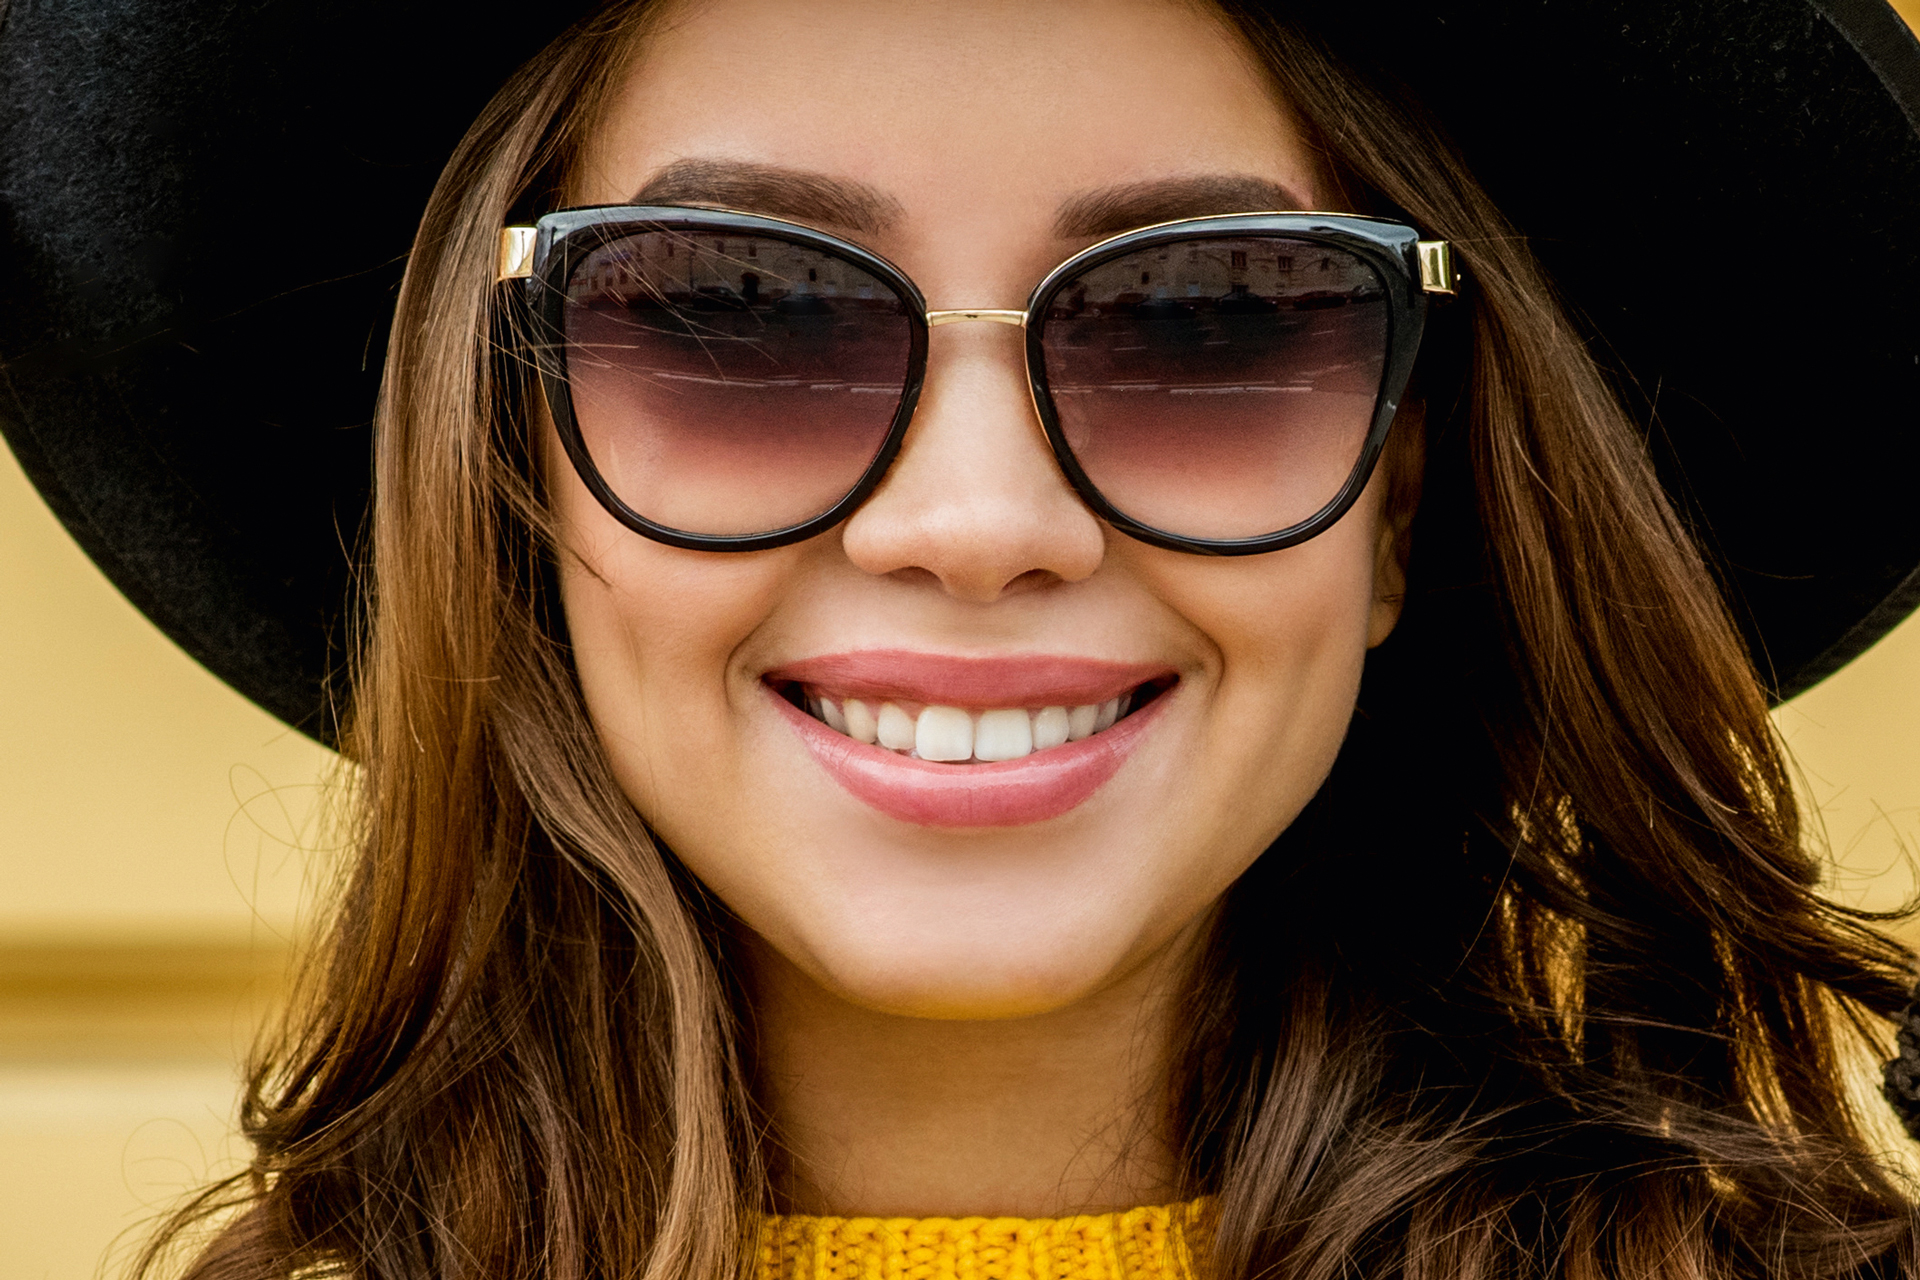 Een zonnebril is meer dan alleen een modeaccessoire - we beschermen onze ogen ermee tegen schadelijke UV-straling.